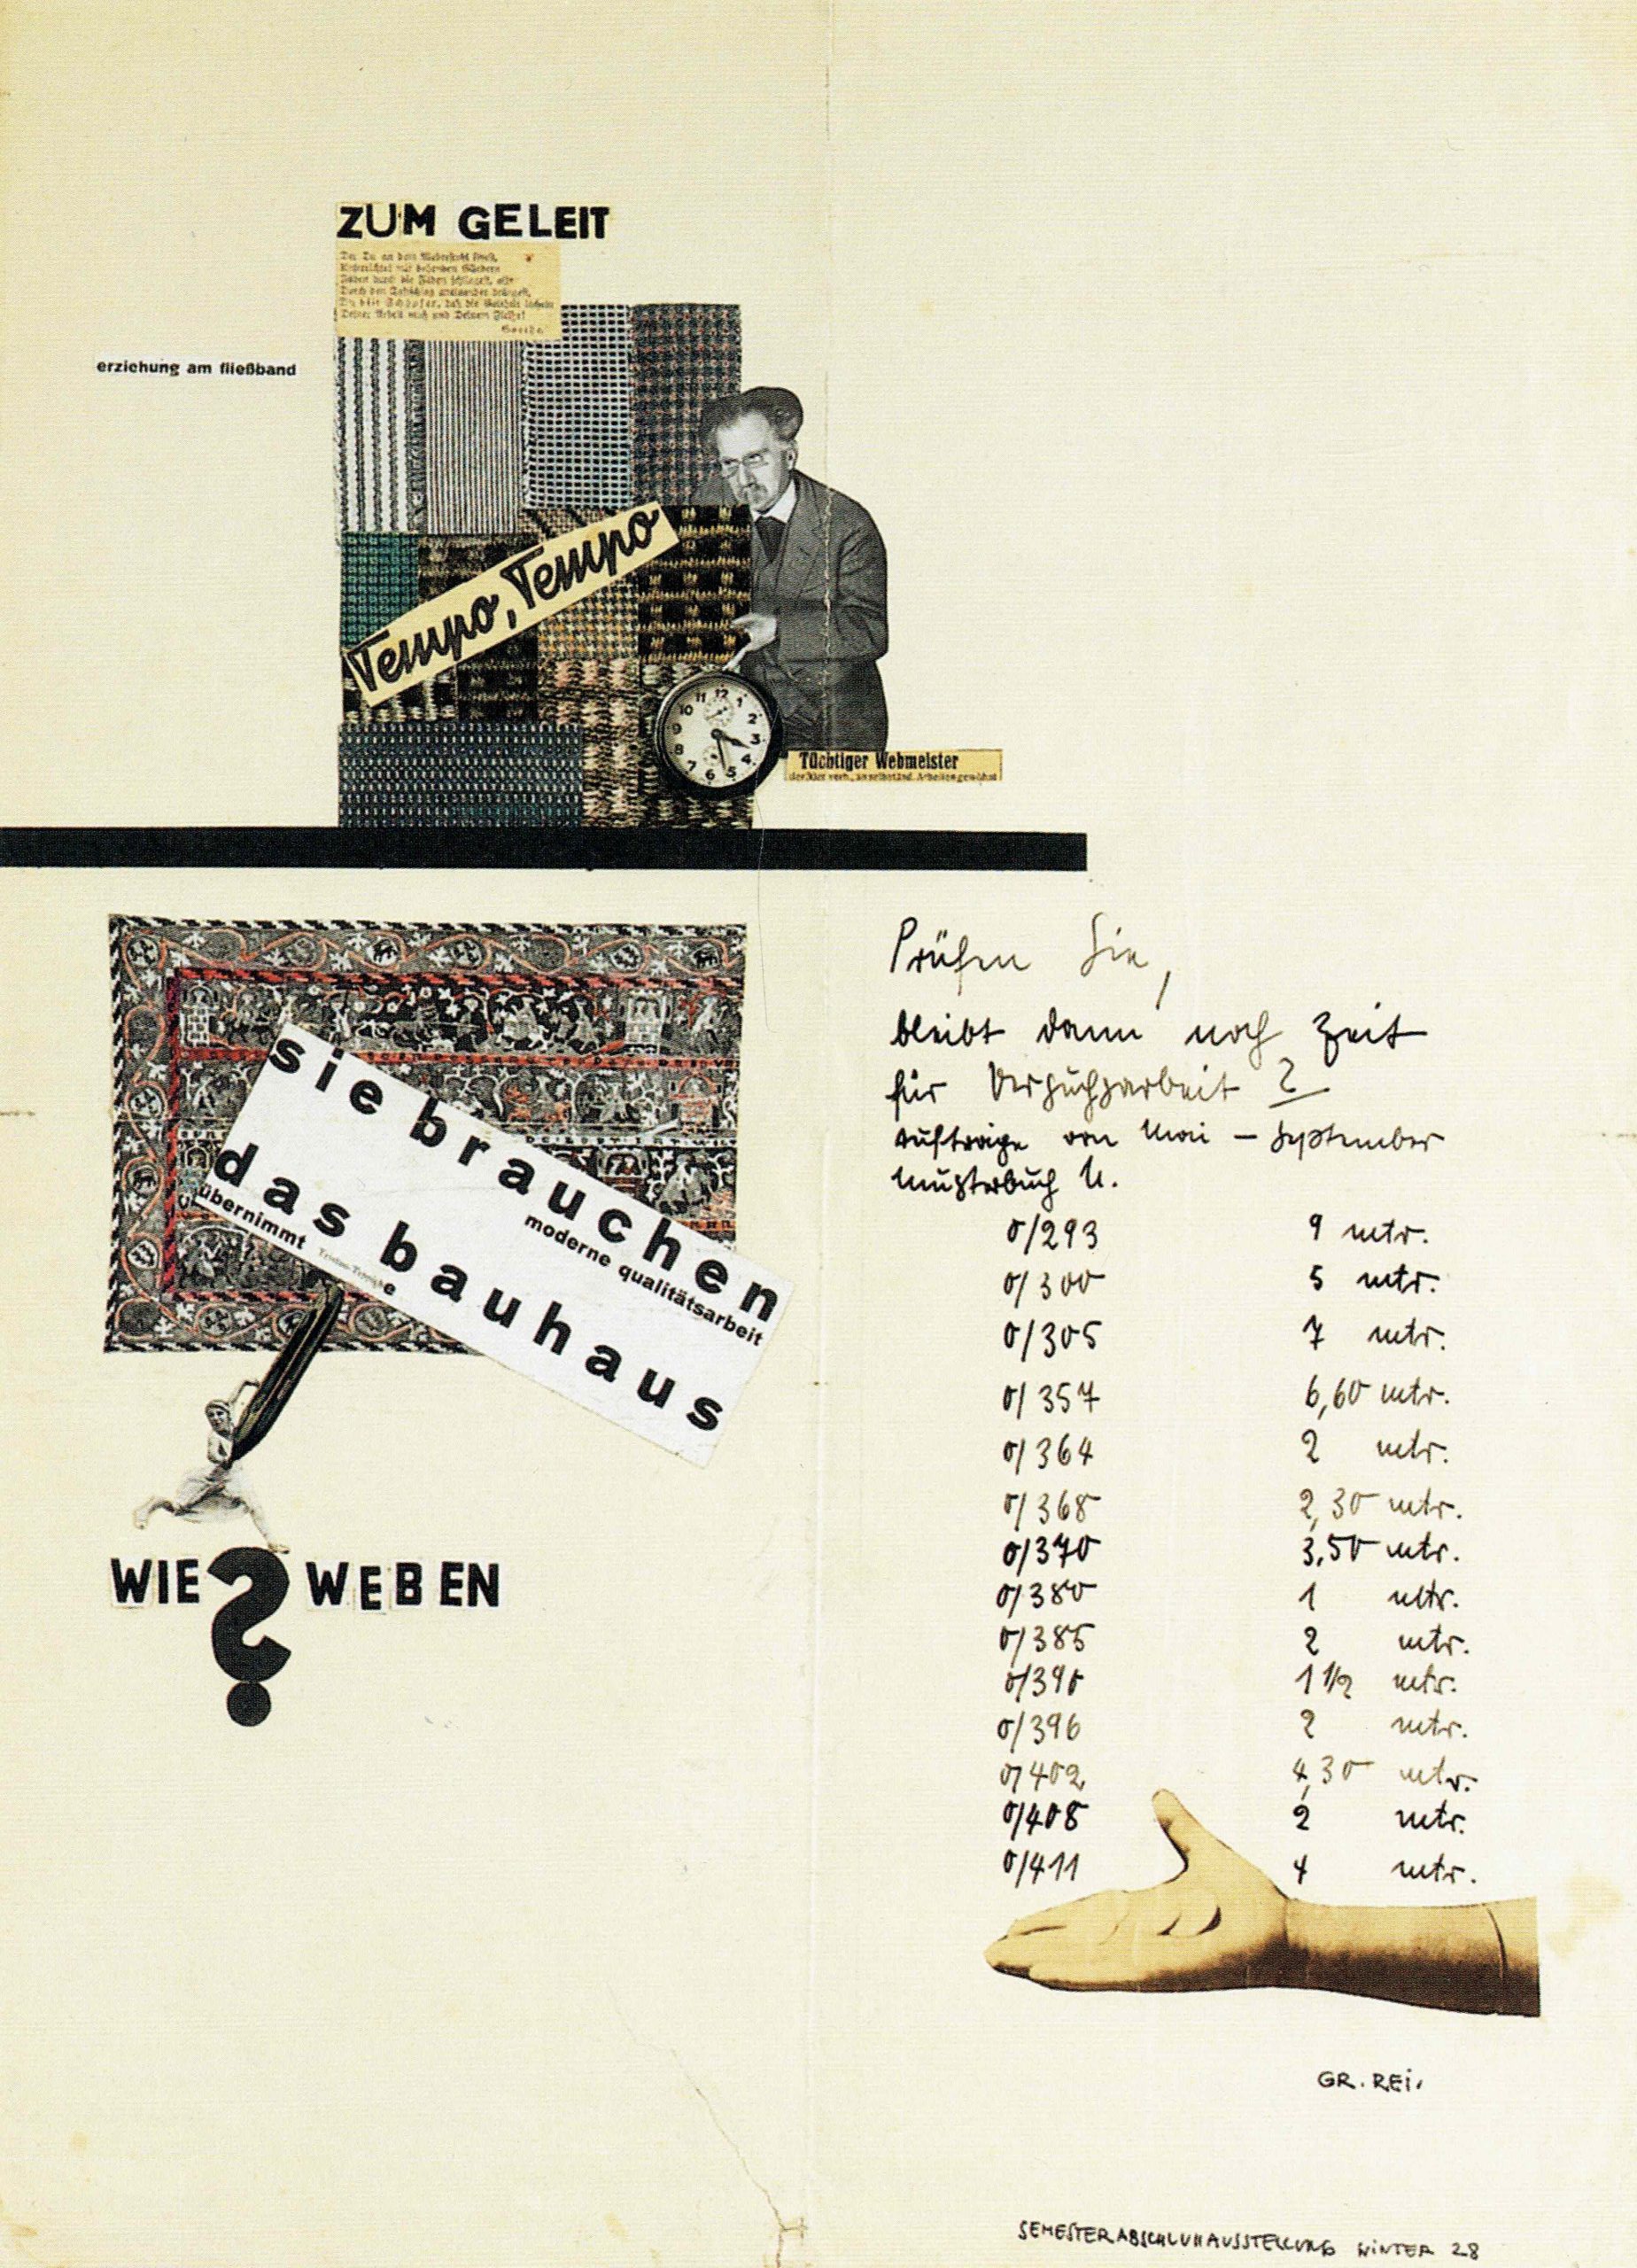 Grete Reichardt, 'sie brauchen das bauhaus', 1928, collage, Stichting Bauhaus Dessau.